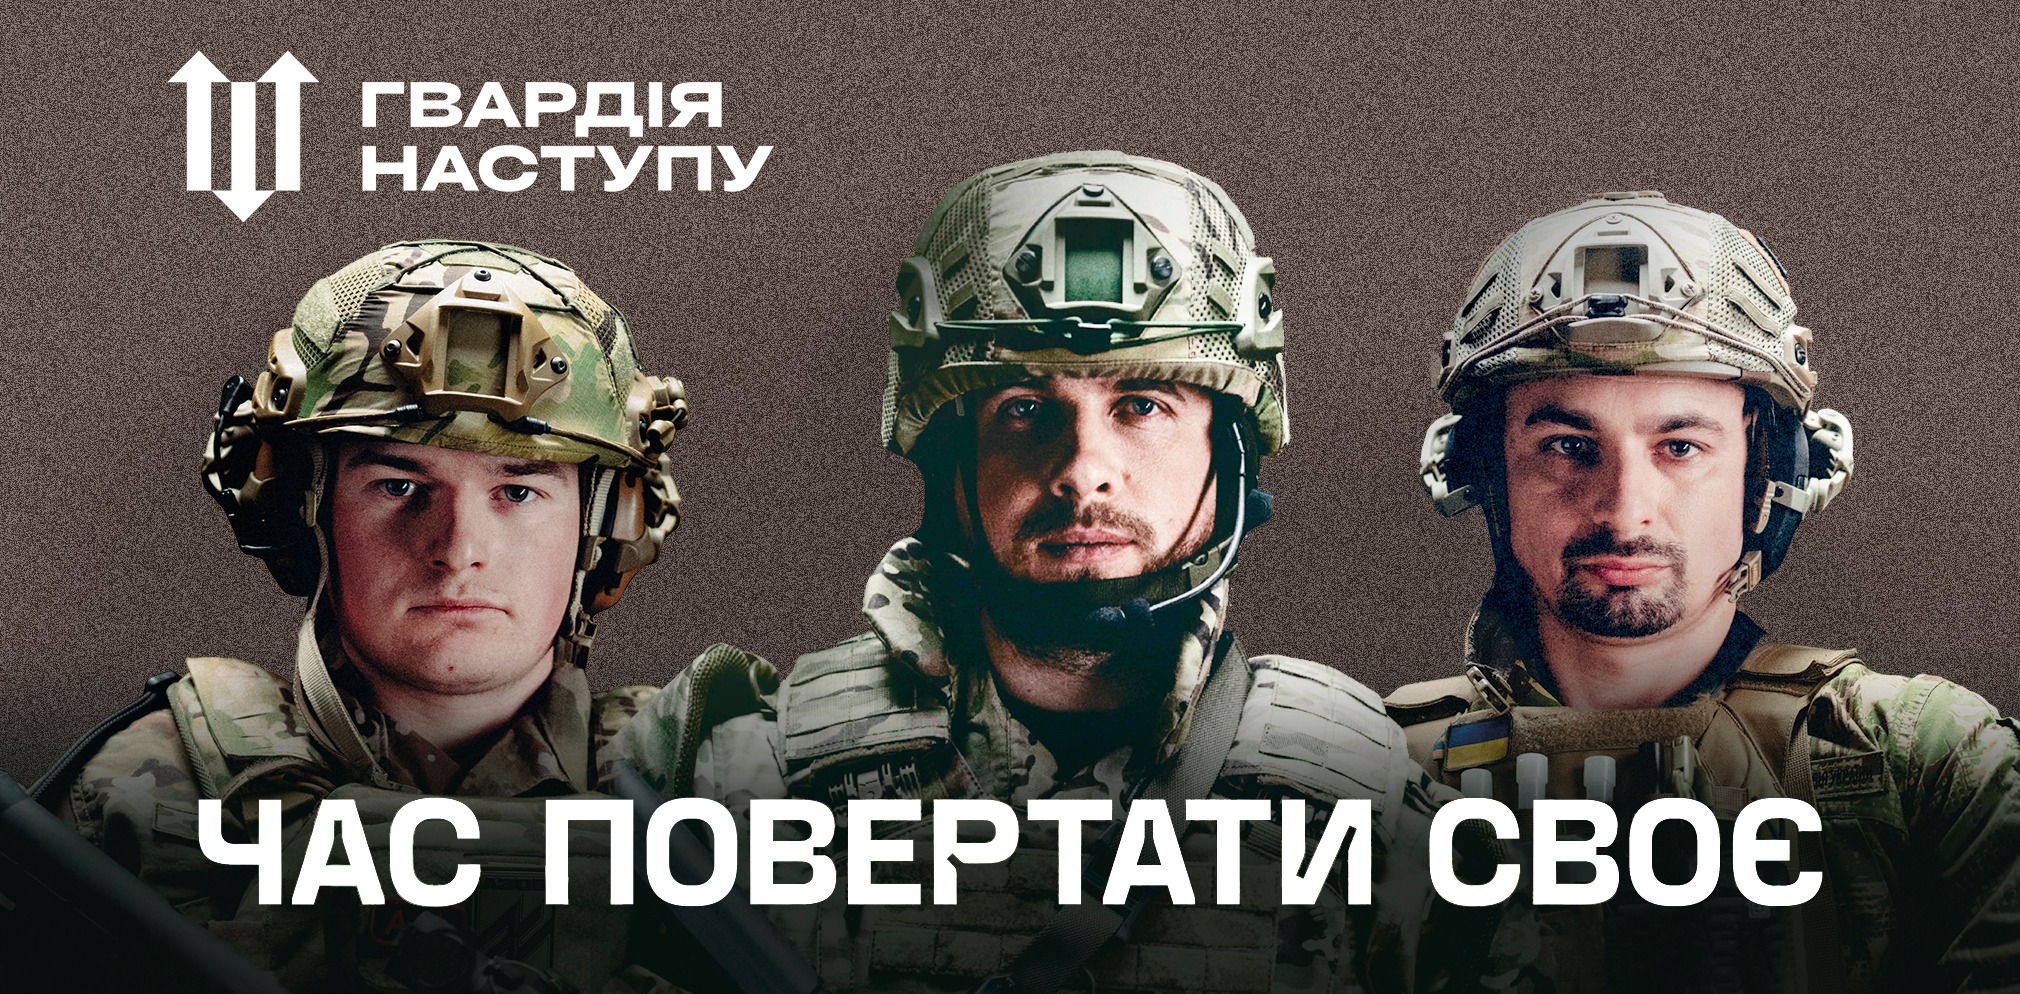 У ЦНАПах Київщини триває запис до “Гвардії Наступу”